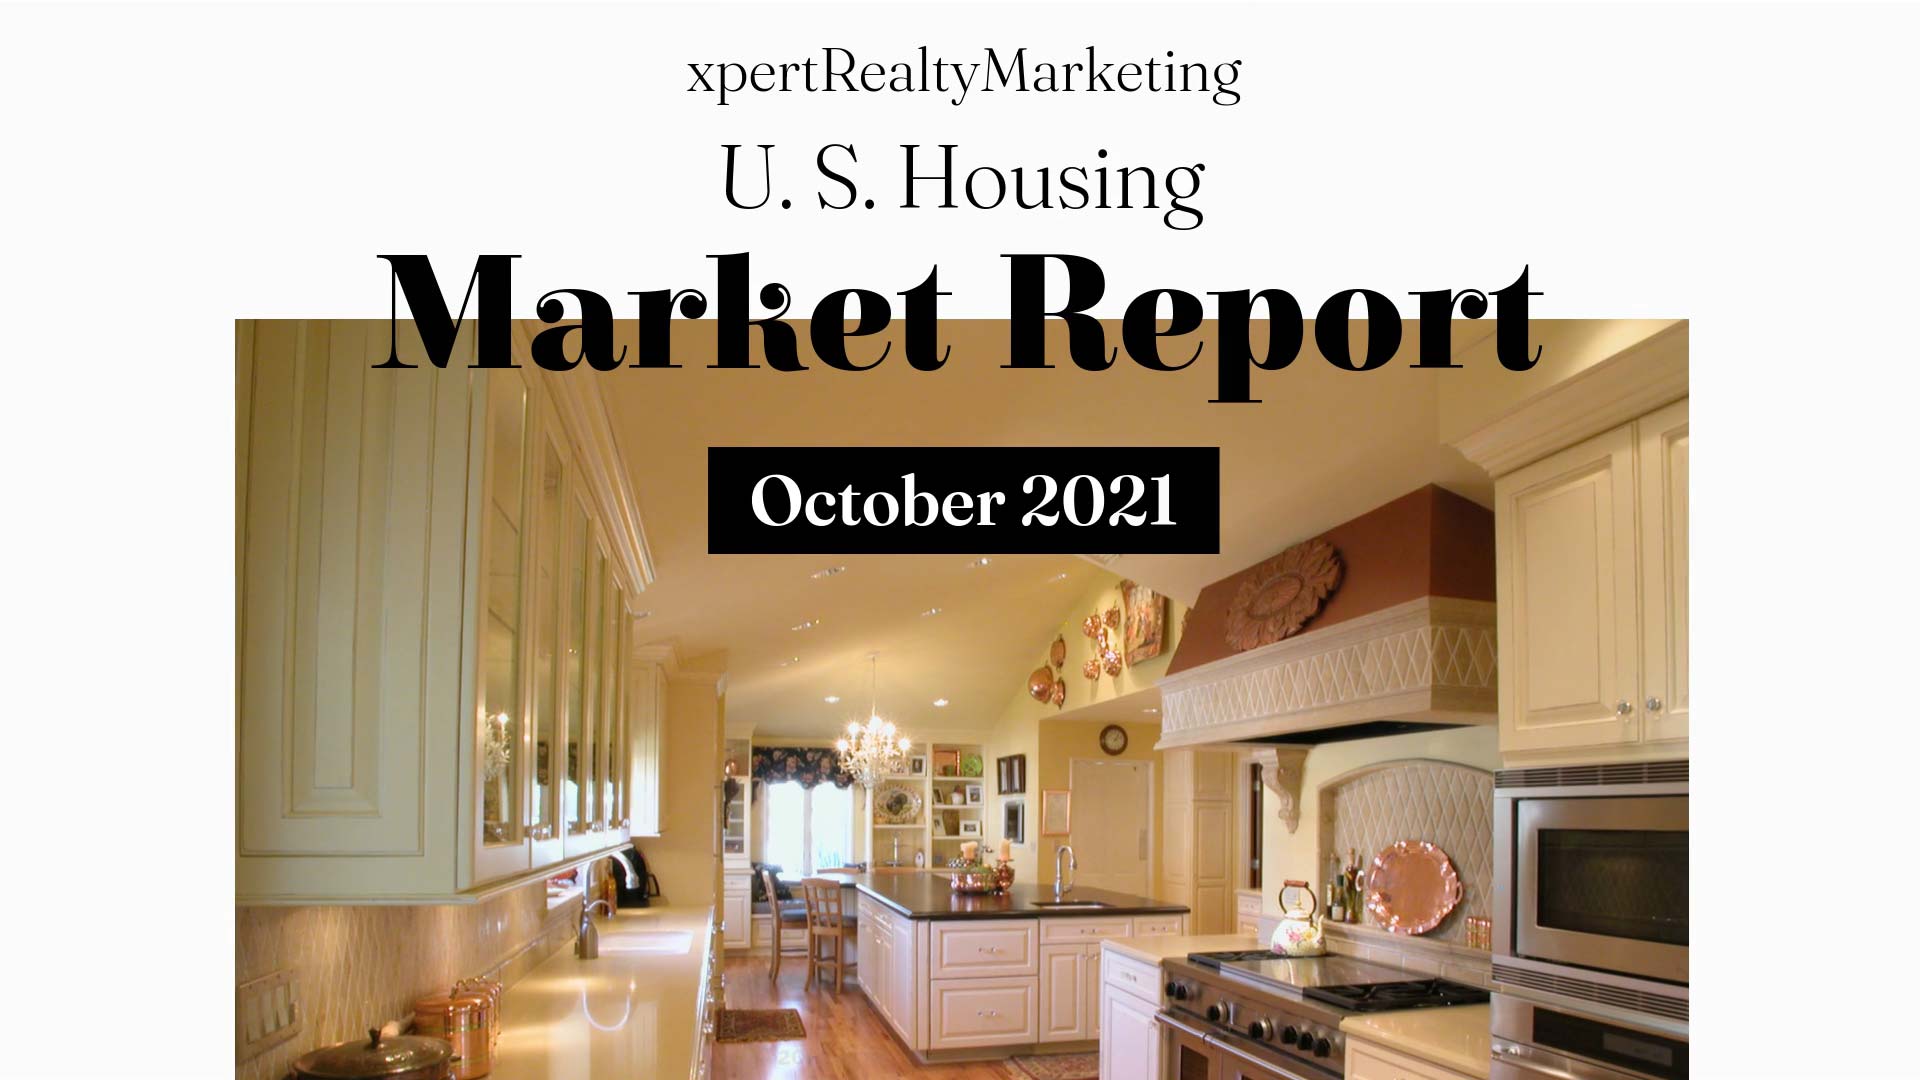 October 2021 U.S. Housing Market Report Video